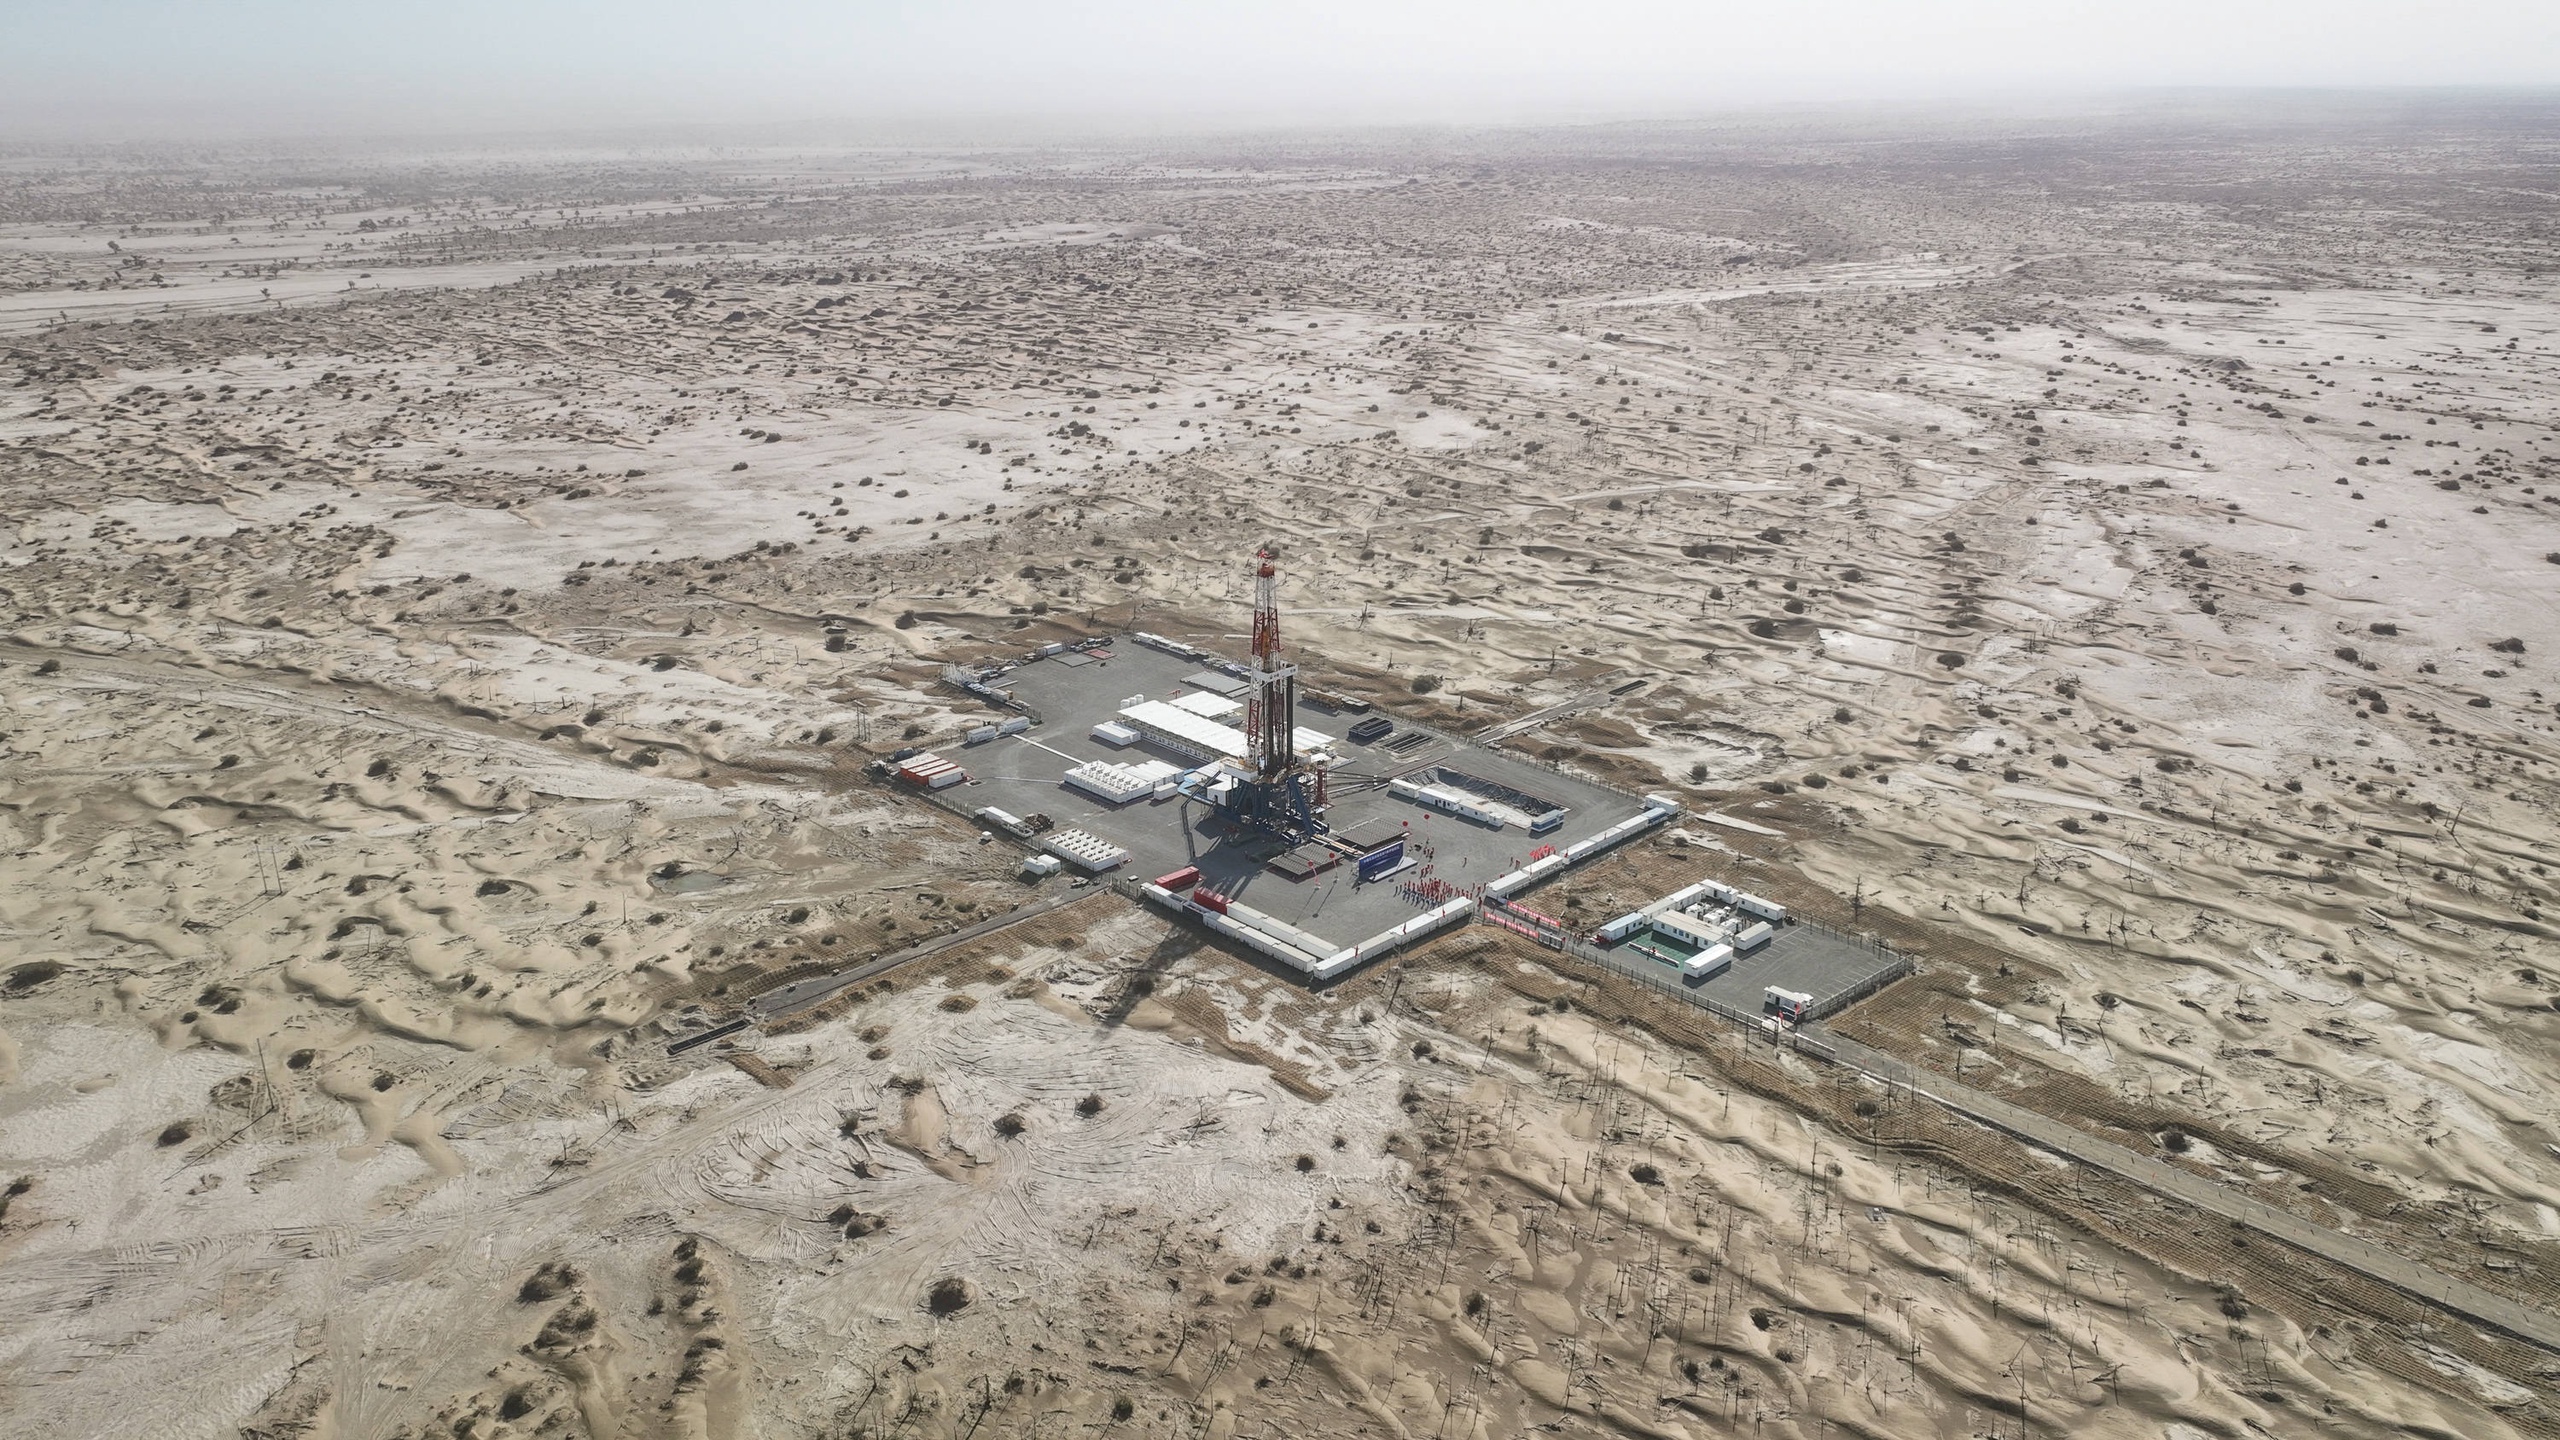 De Chinese provincie Xinjiang staat bekend om de enorme rijkdom aan bodemschatten als zeldzame aardmetalen, gas en olie. Vorige maand ontdekte China’s grootste raffinagebedrijf aanzienlijke olie- en gasstromen in een proefboring in het Tarimbekken op een diepte van meer dan 8.500 meter.